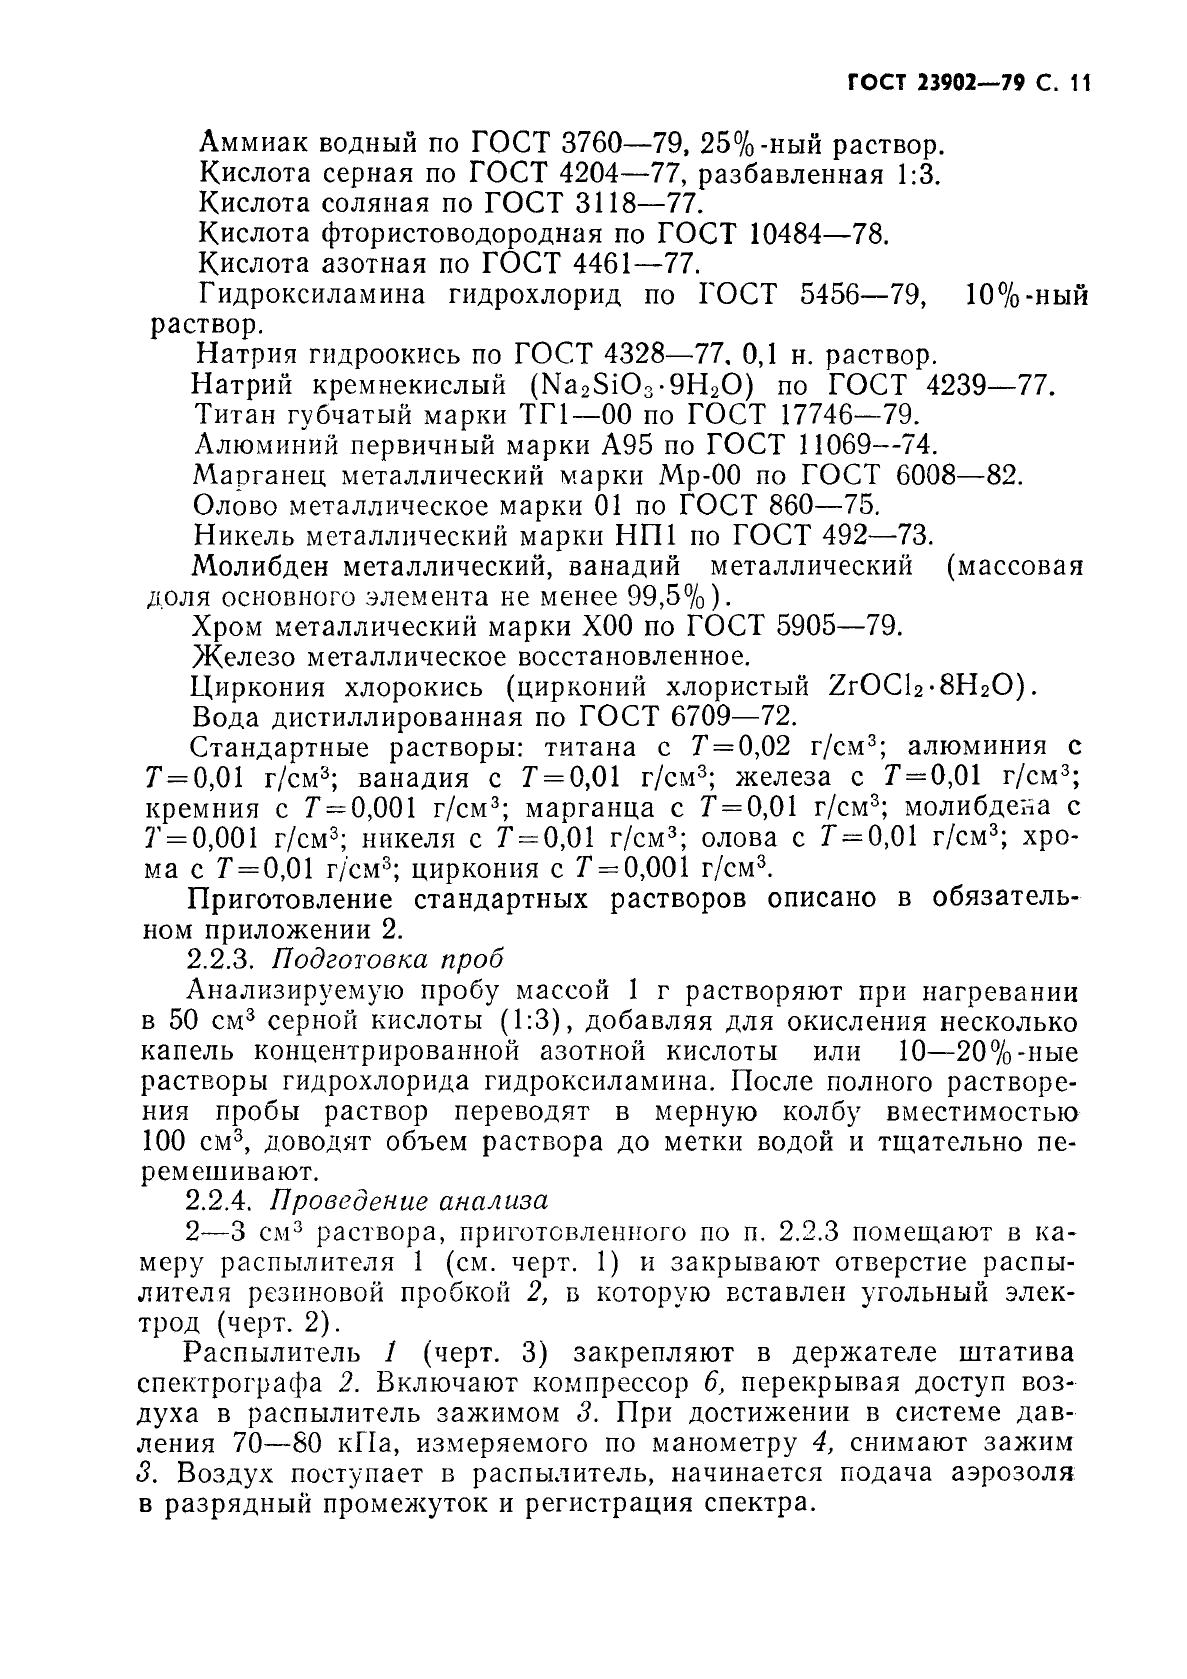 ГОСТ 23902-79 Сплавы титановые. Методы спектрального анализа (фото 12 из 25)